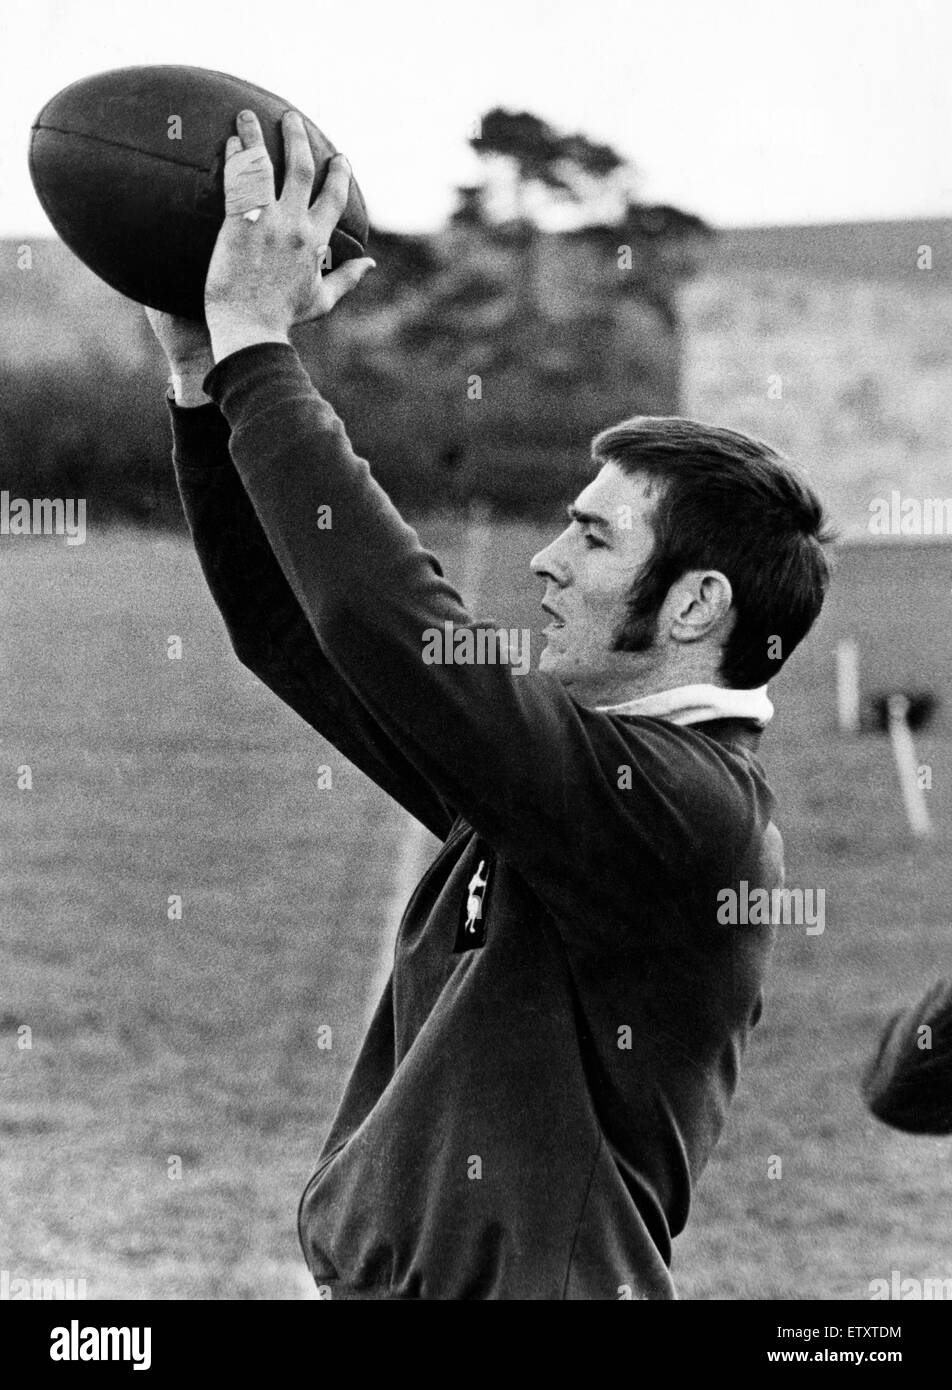 Il Galles internazionale di rugby union player John Bevan di Cardiff, mostrato durante il corso di formazione a Bridgend. Novembre 1970. Foto Stock